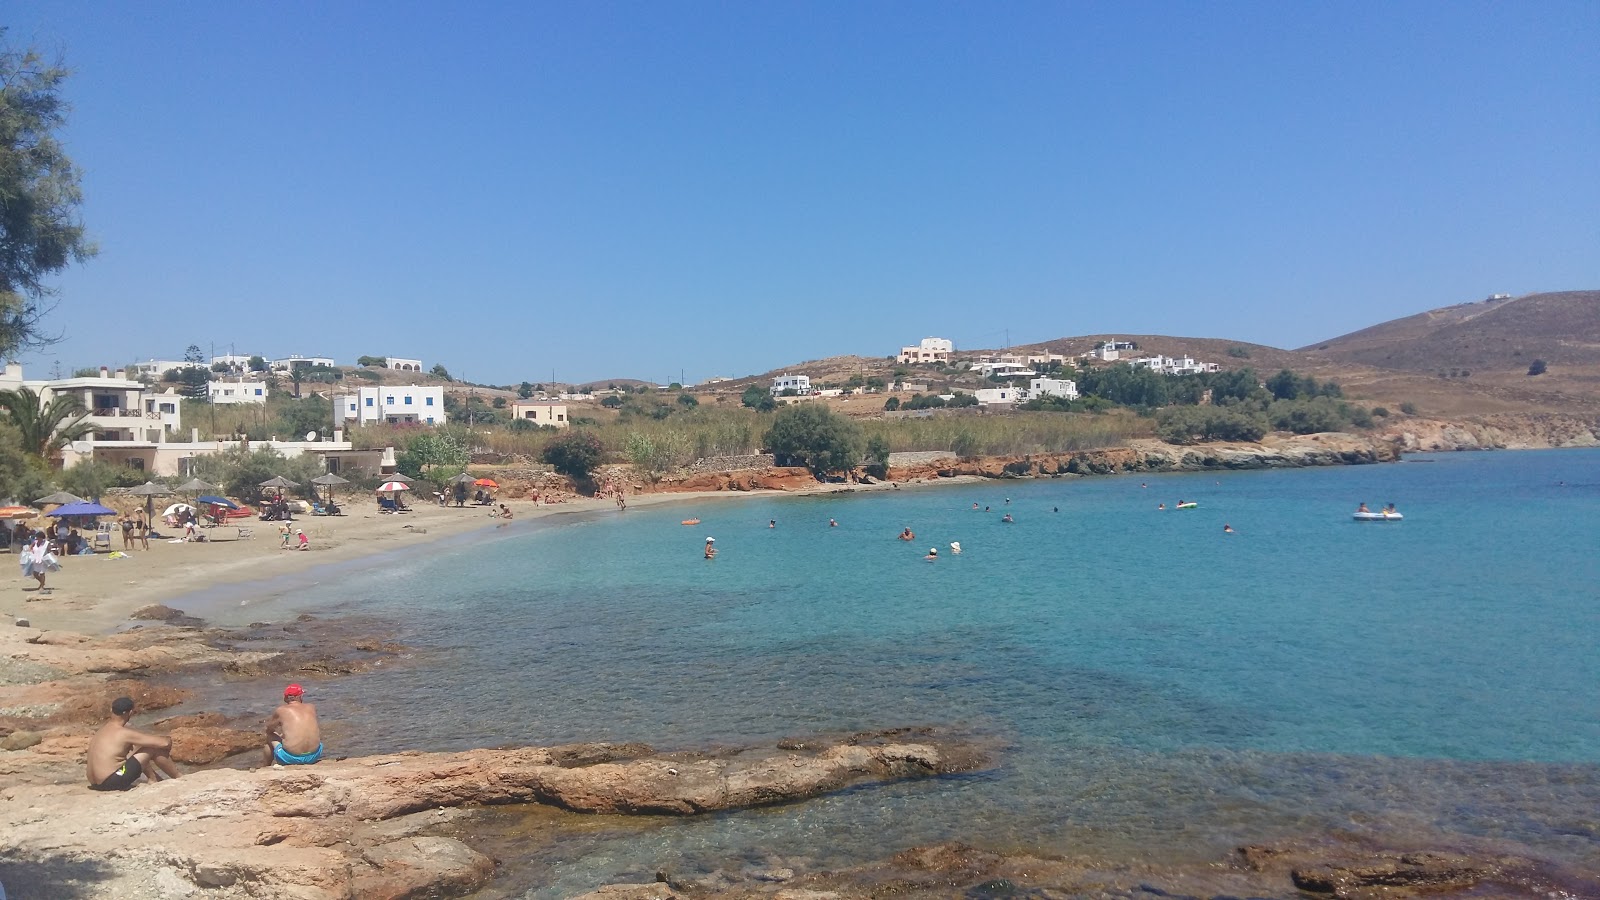 Famprika'in fotoğrafı gri kum yüzey ile